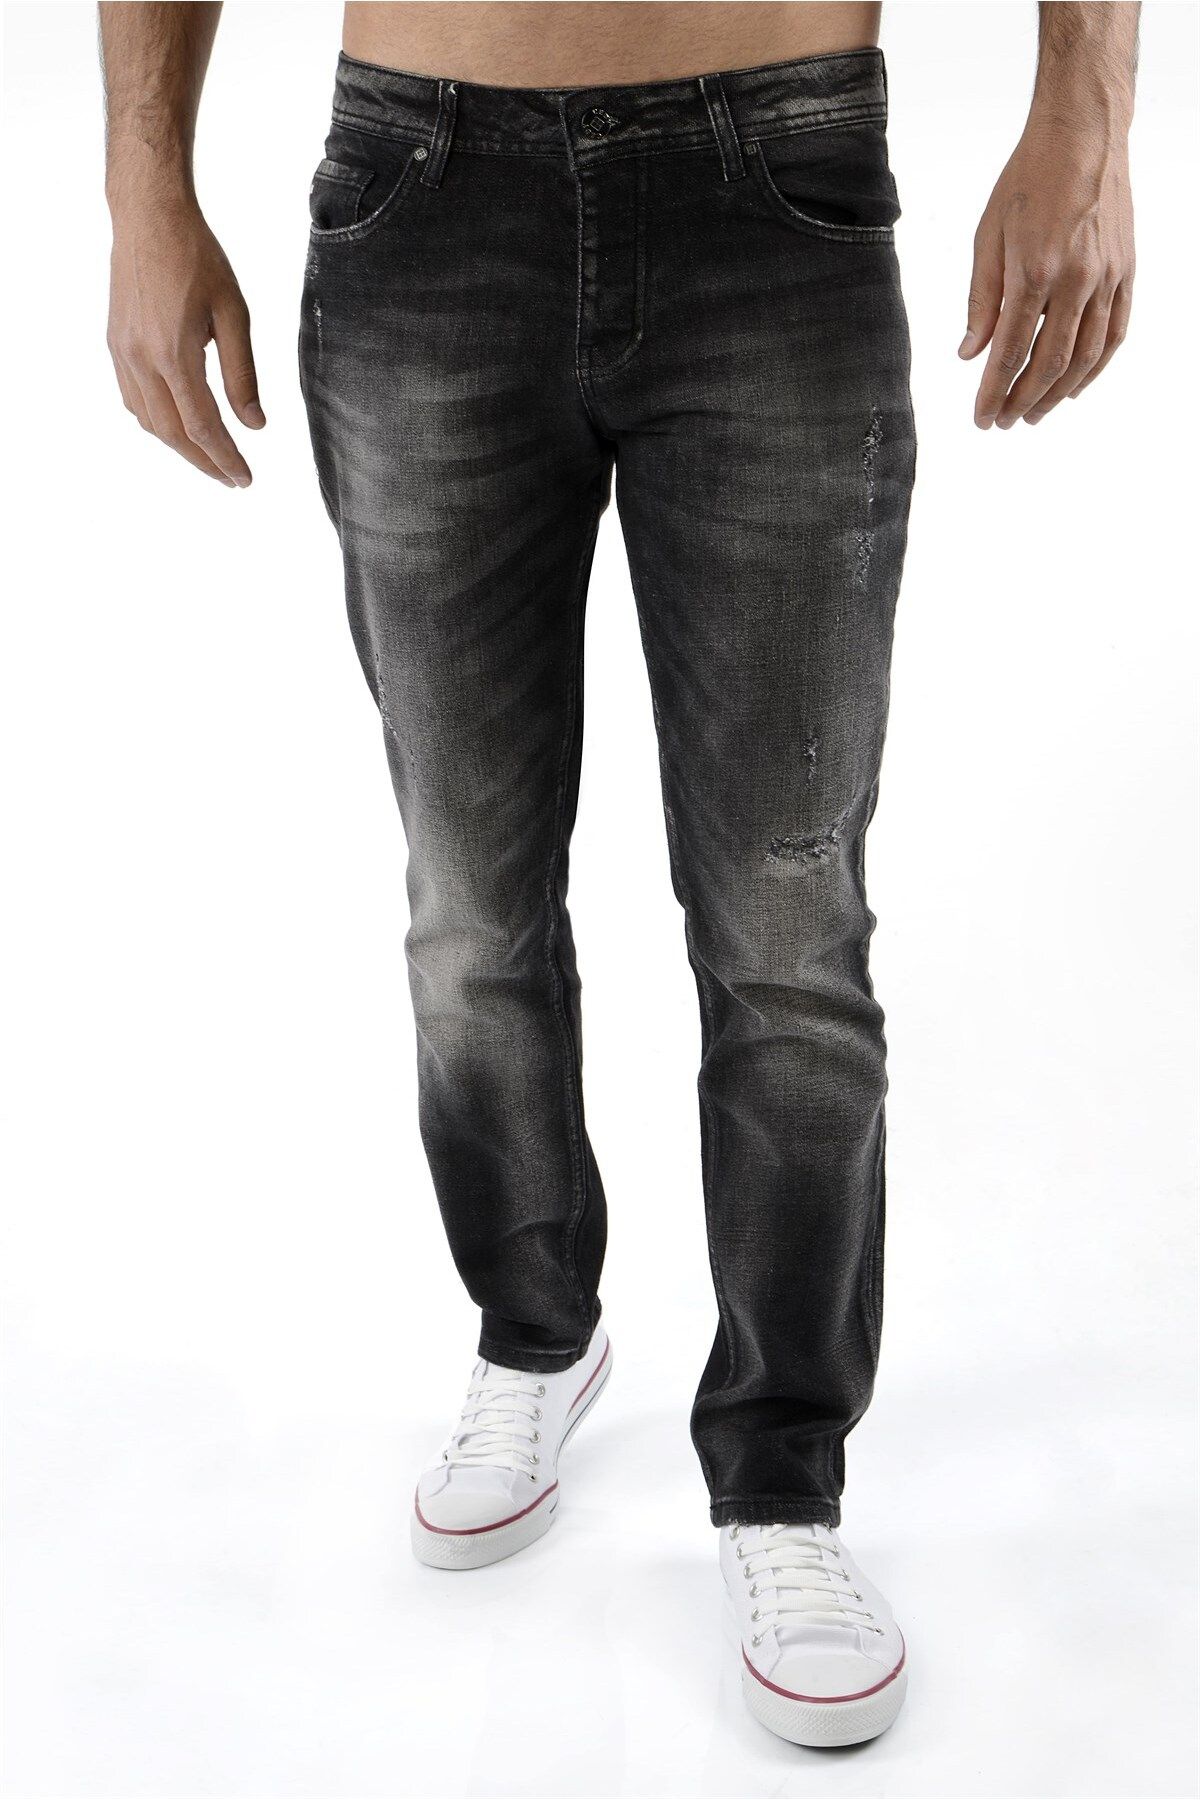 CEDY DENIM Erkek Siyah Kot Pantolon Slim Fit Jean - C326